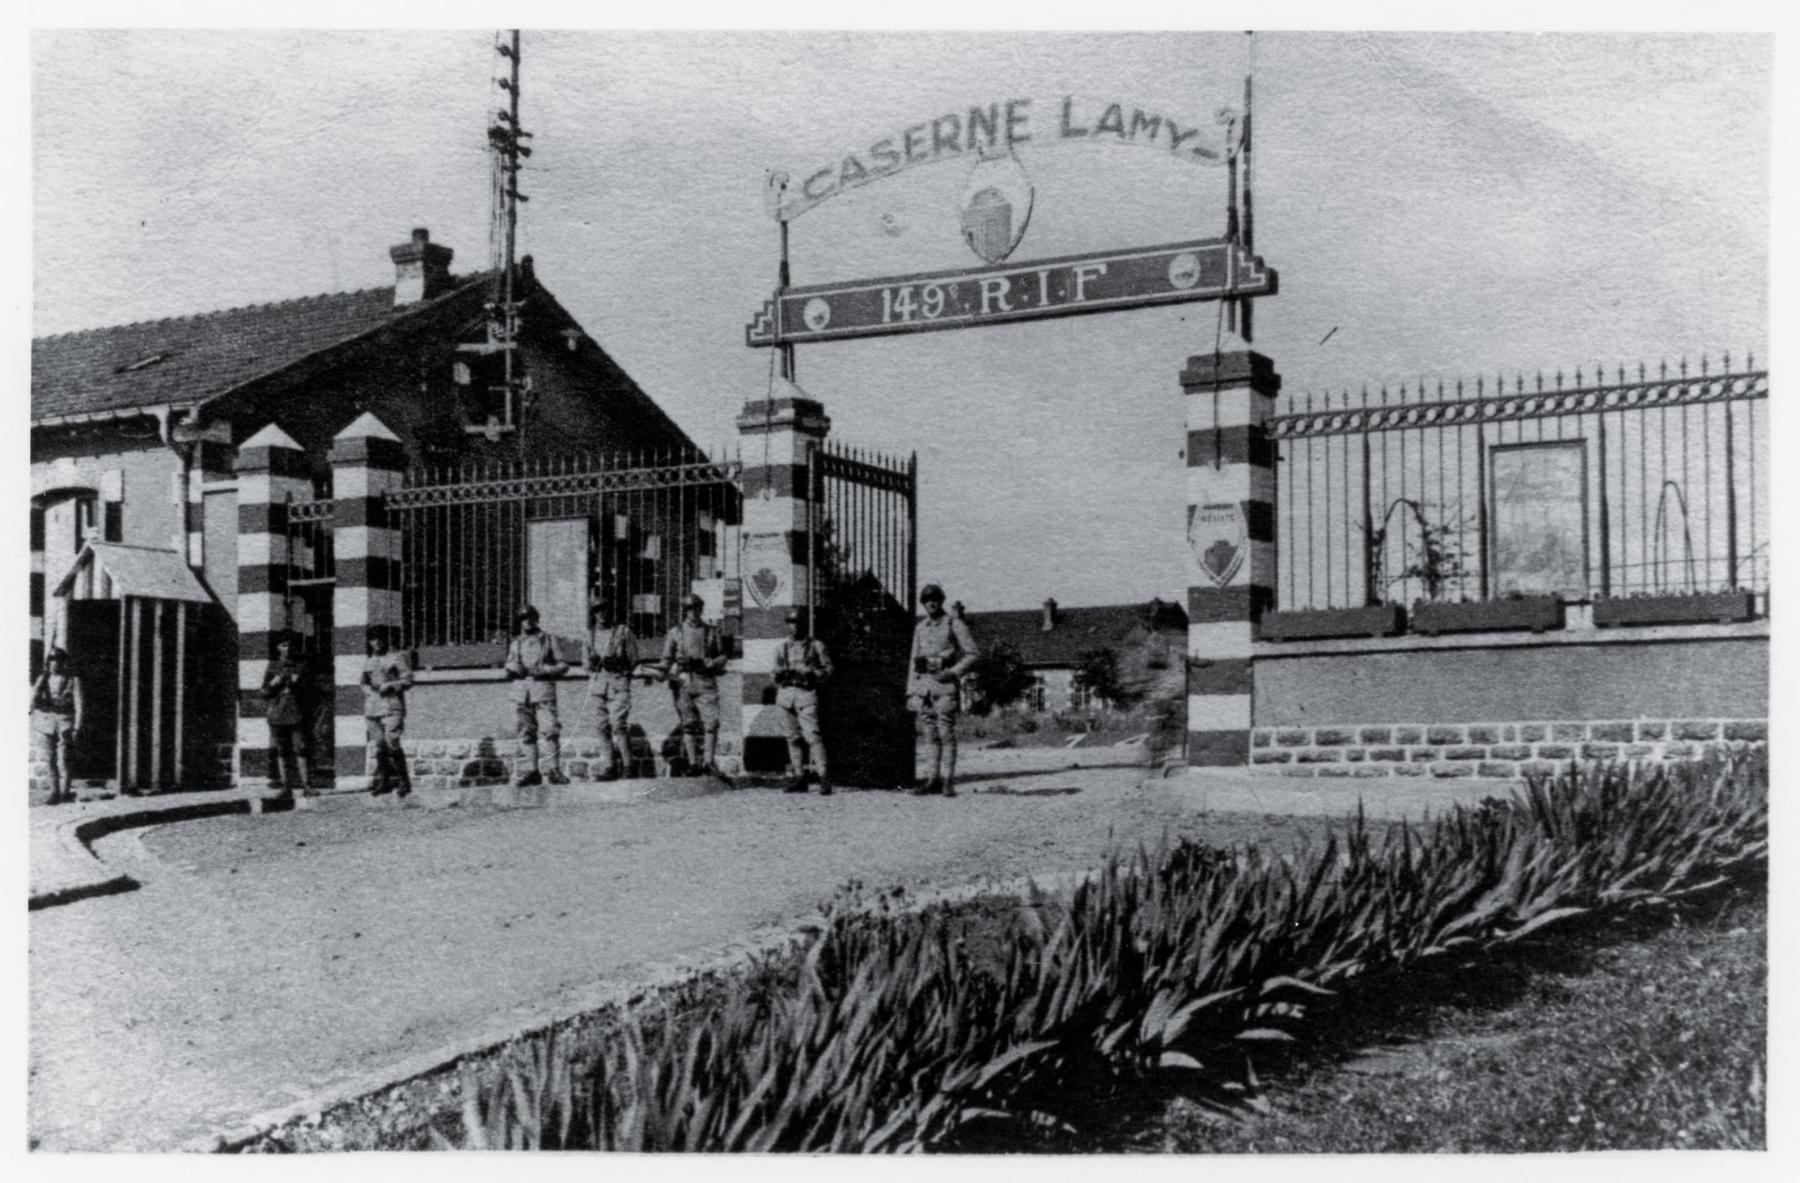 Ligne Maginot - LONGUYON - CASERNE LAMY - (Camp de sureté) - L'entrée de la caserne alors devenue caserne du 149° RIF